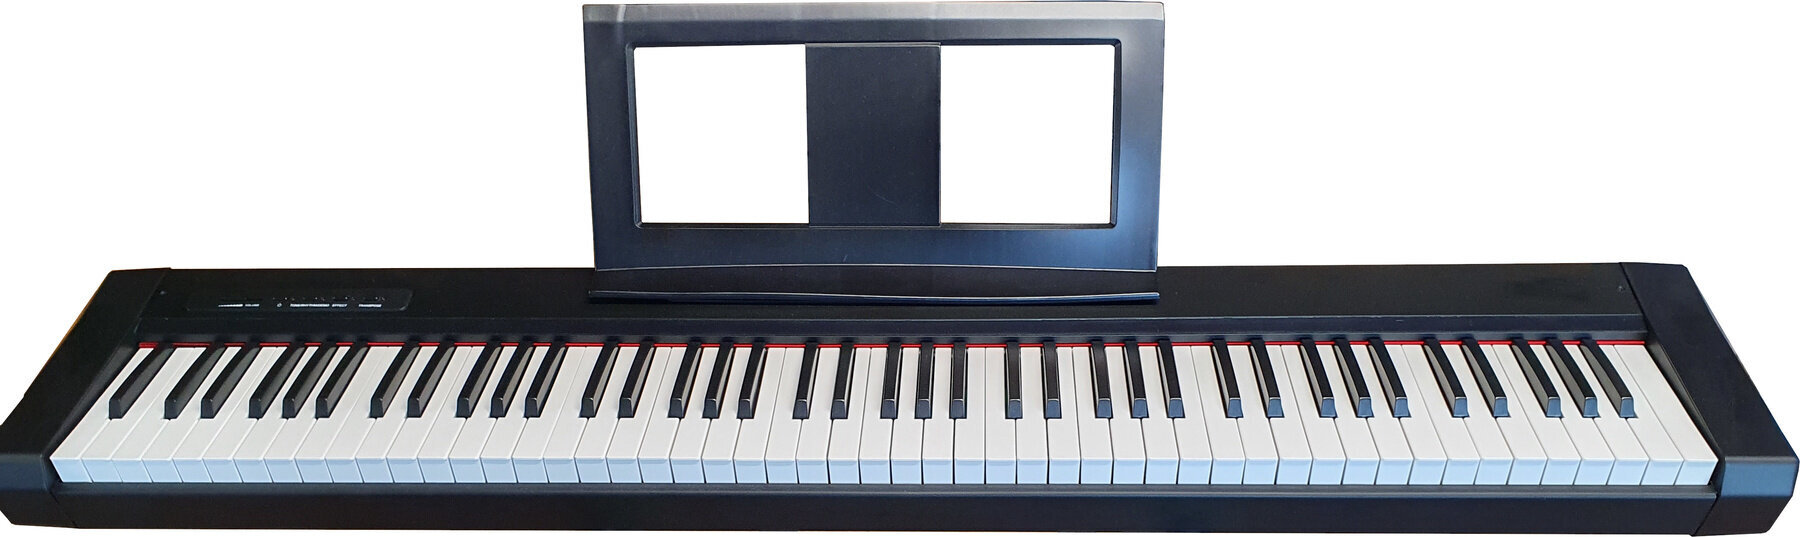 Digitalni pianino Pianonova ZSF-881 Demo